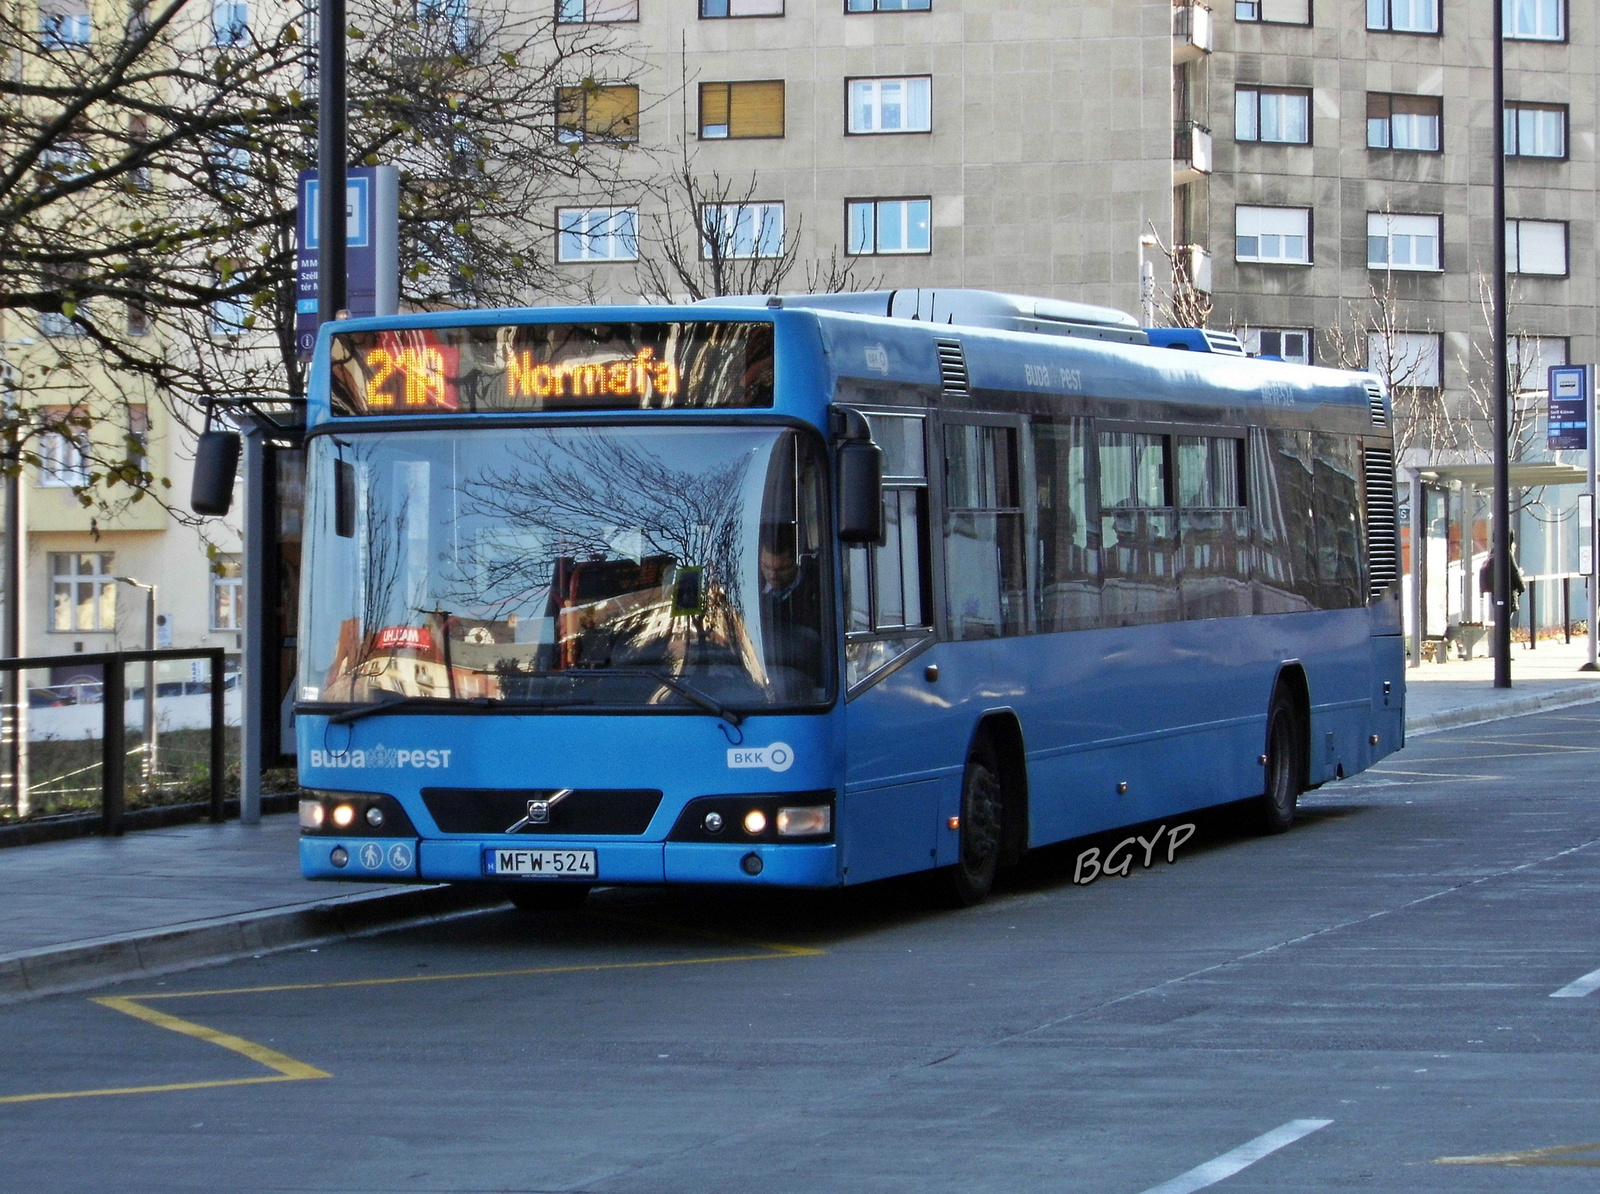 Volvo 7700 (MFW-524)